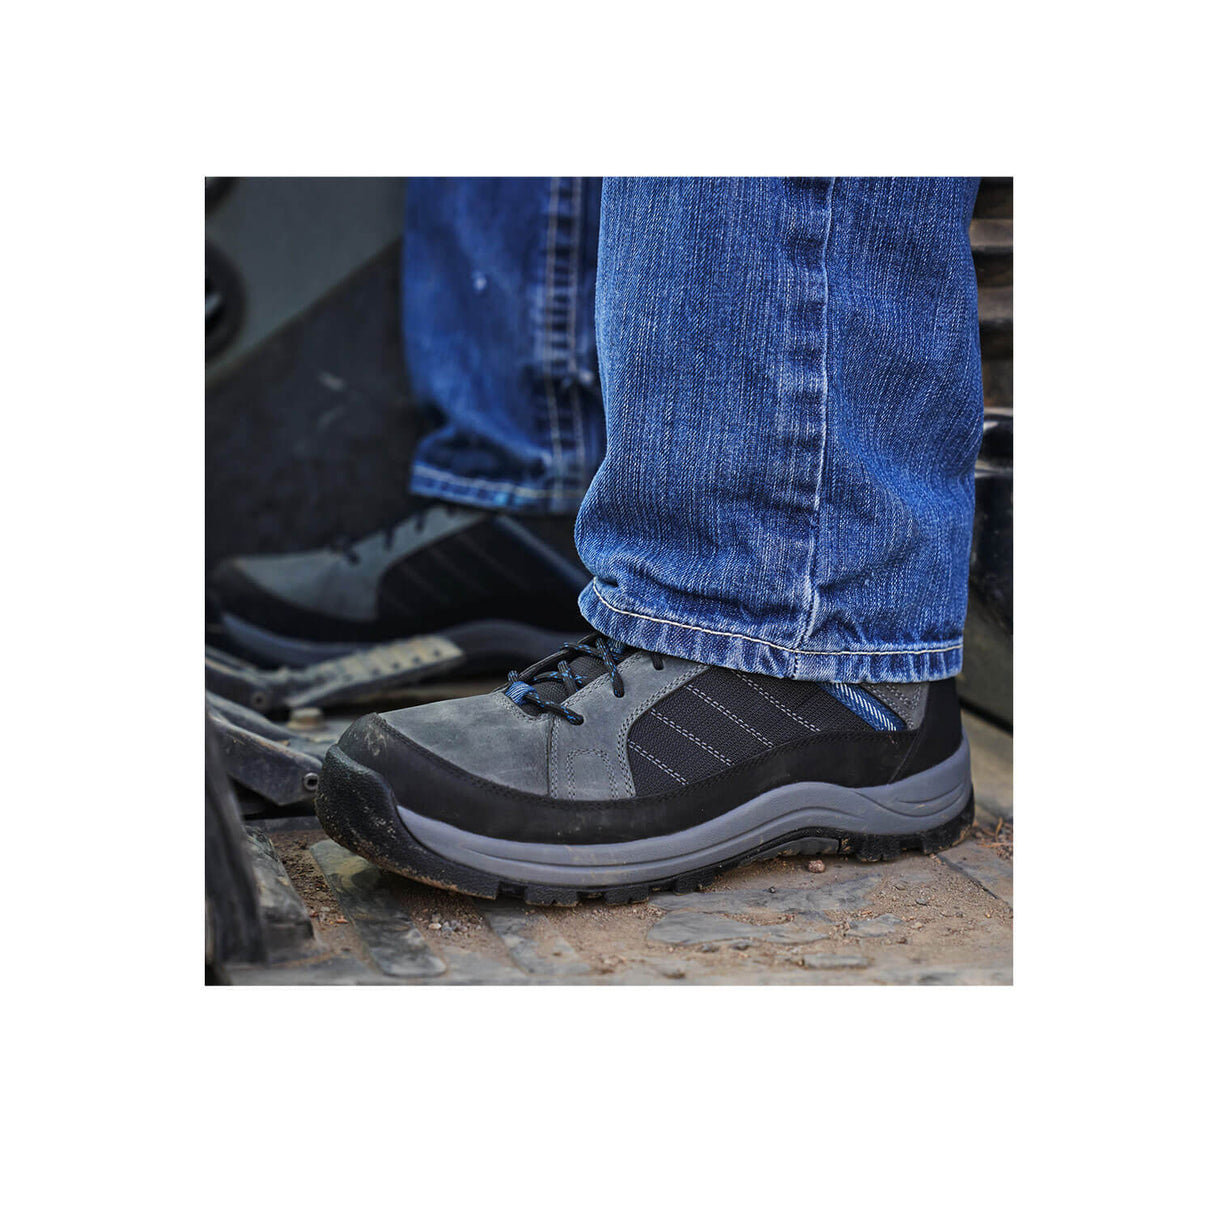 Danner Riverside 4.5" Men's Steel-Toe Work Boot WP 15342-7